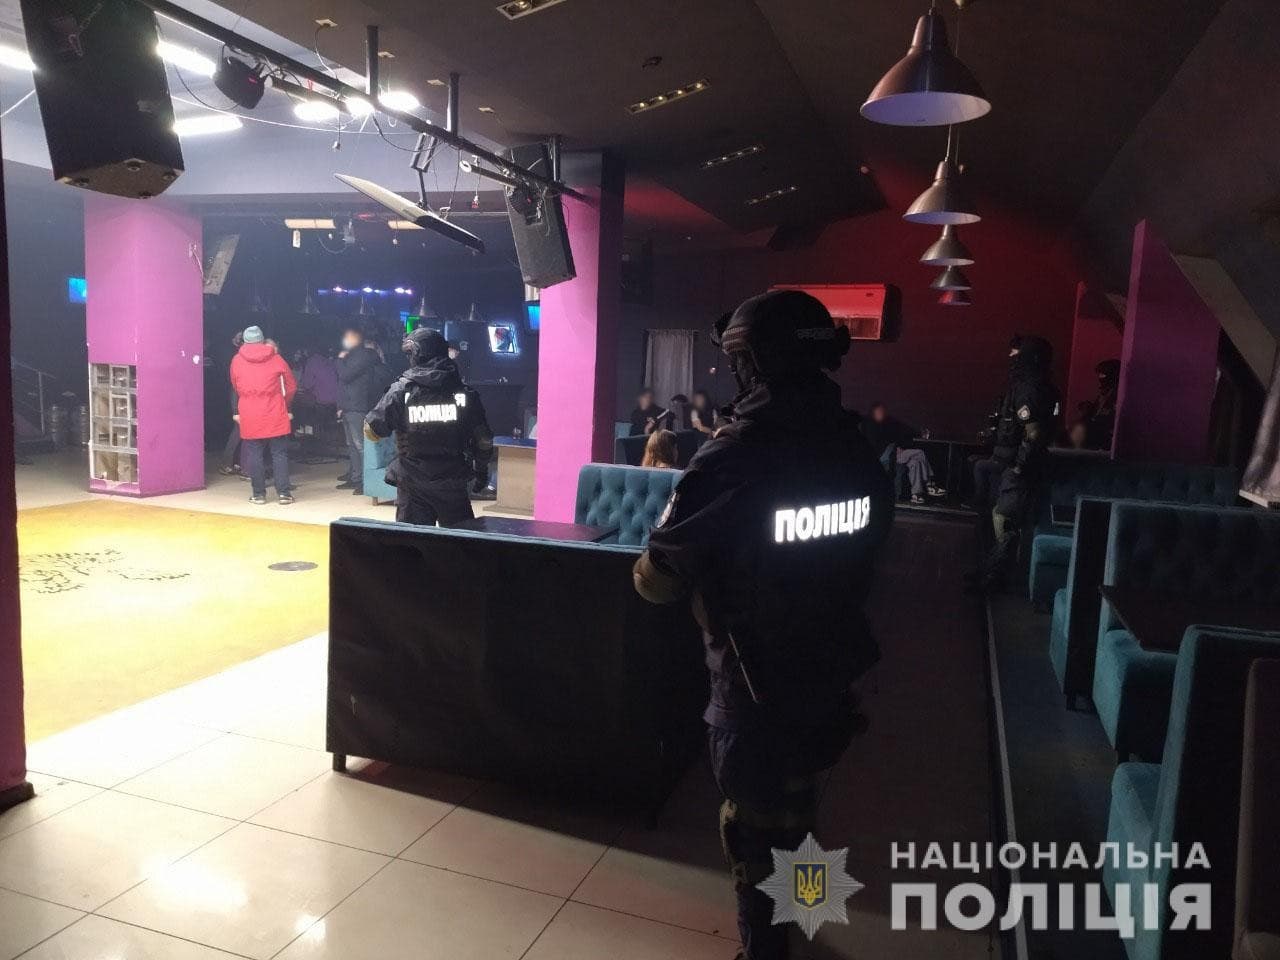 Коронавирус Харьков: В ночном клубе изъяли весь алкоголь